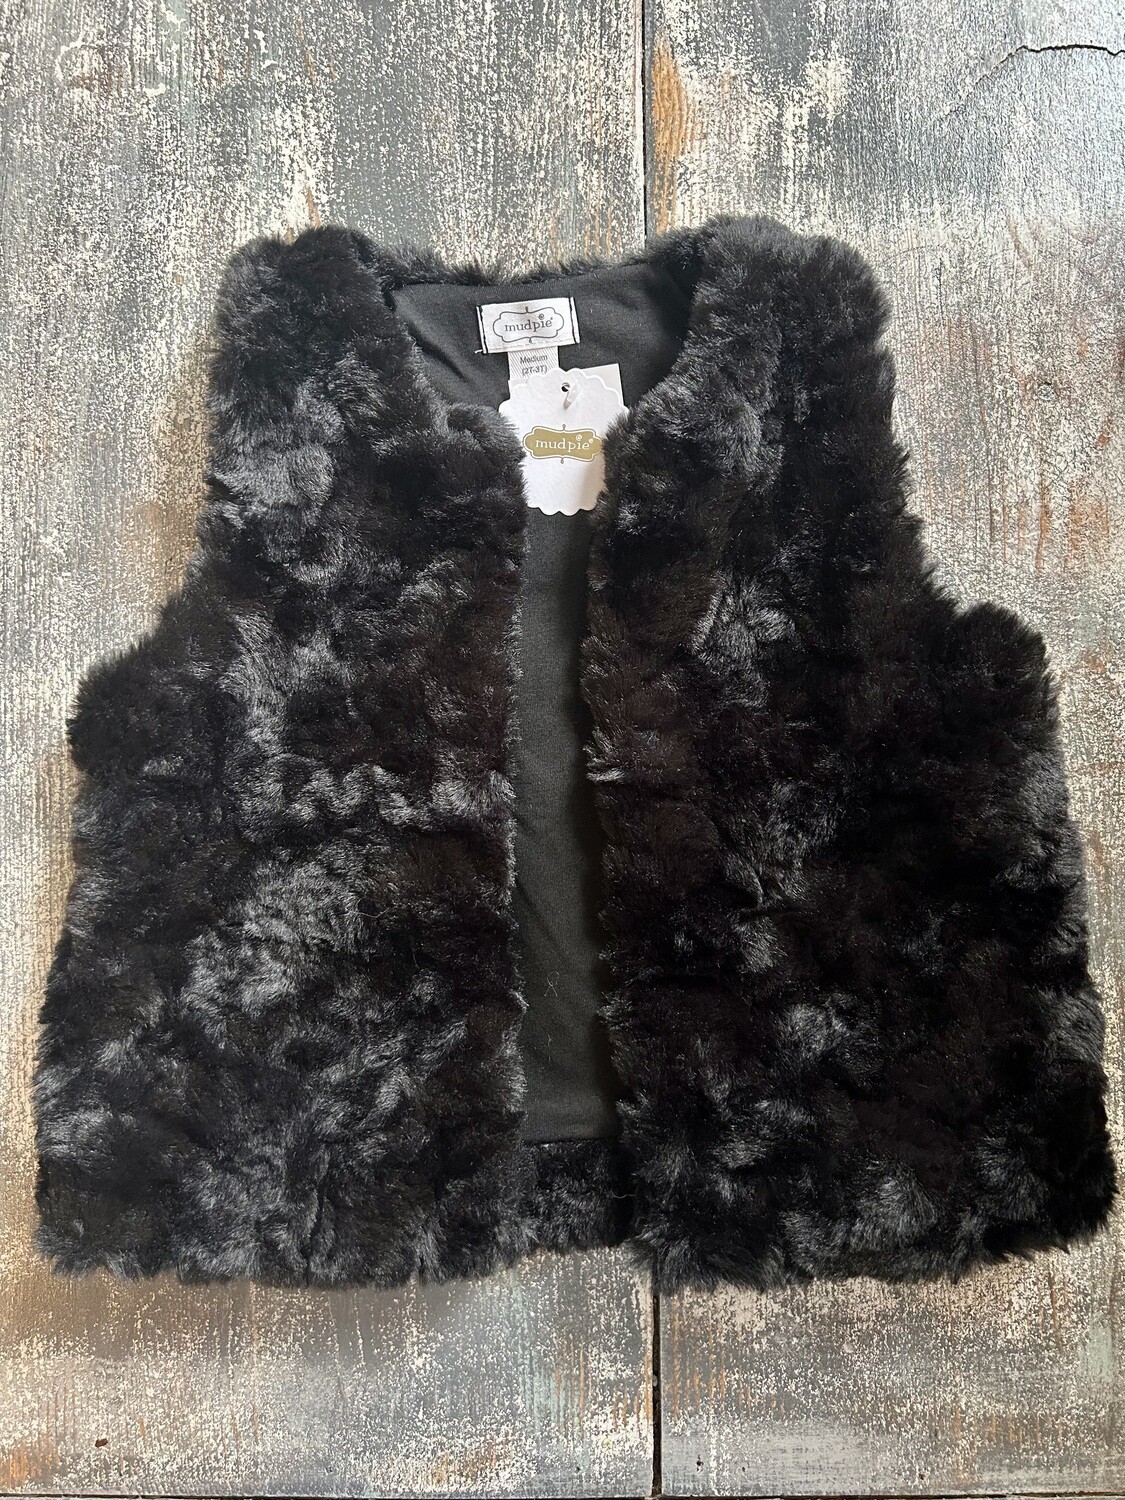 Black Fur Vest